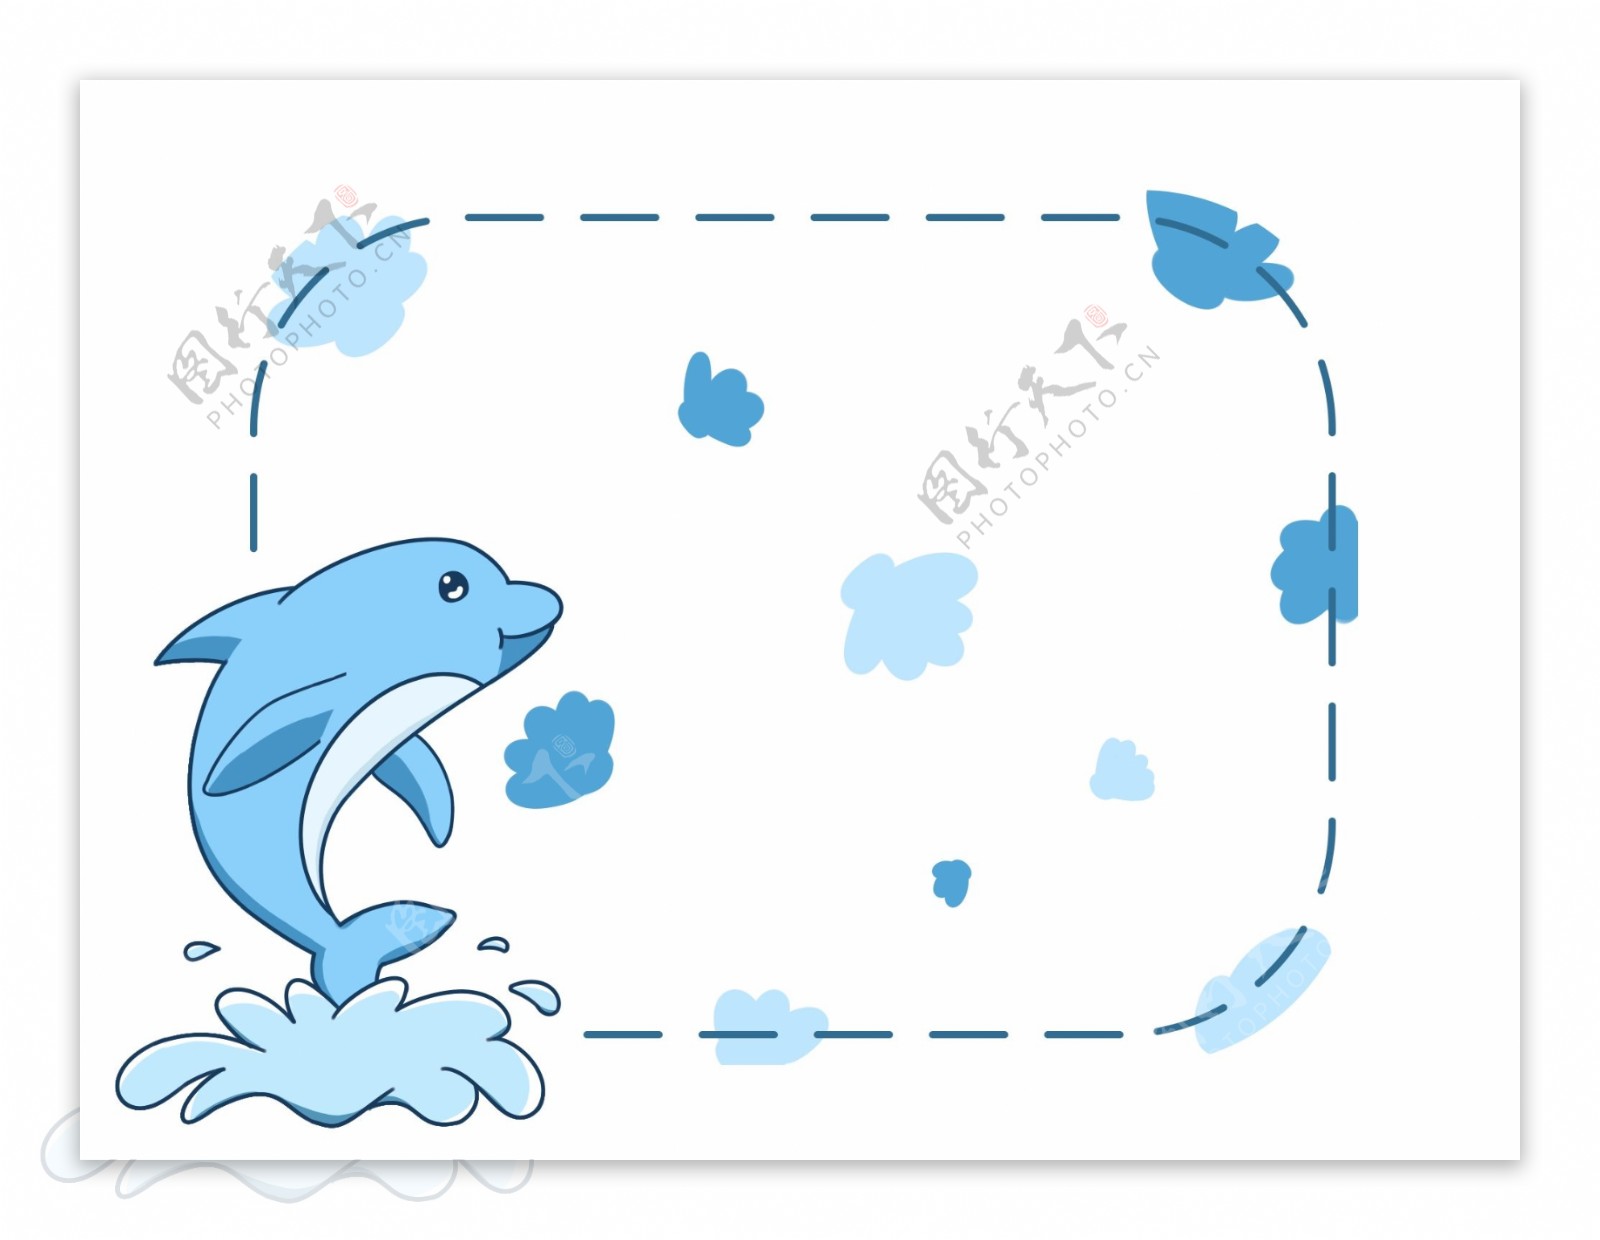 蓝色鲸鱼边框插画